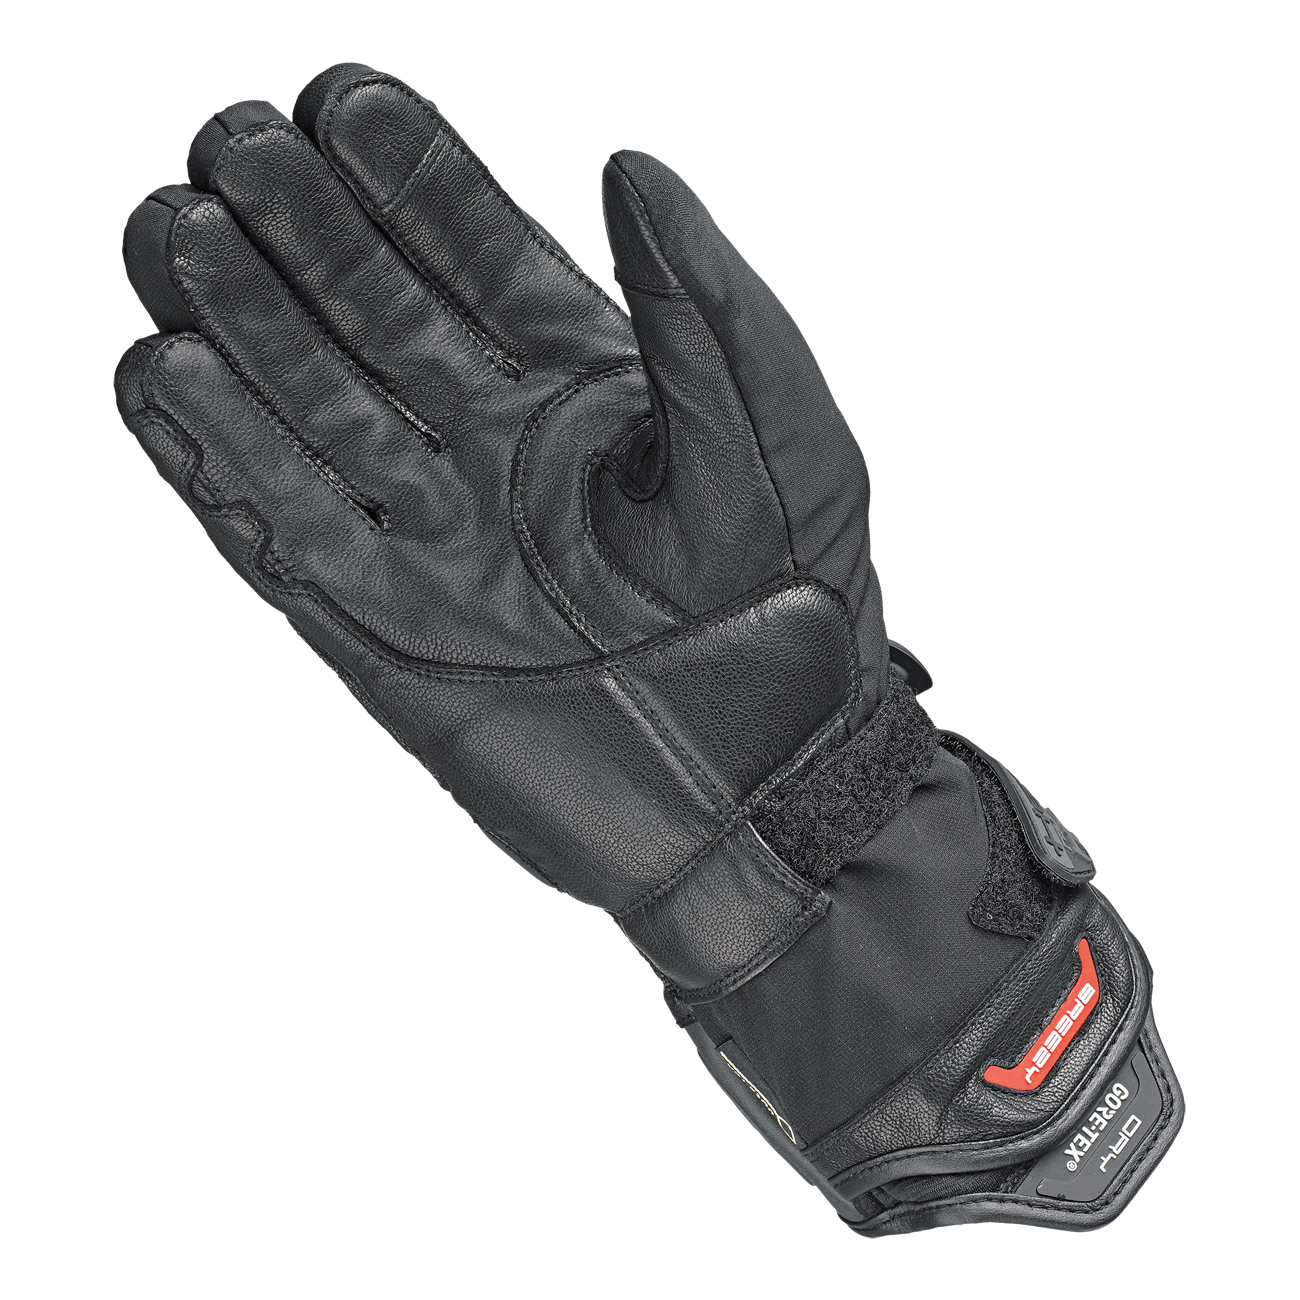 Satu 2in1 GORE-TEX Handschuh + Gore 2in1 Technologie